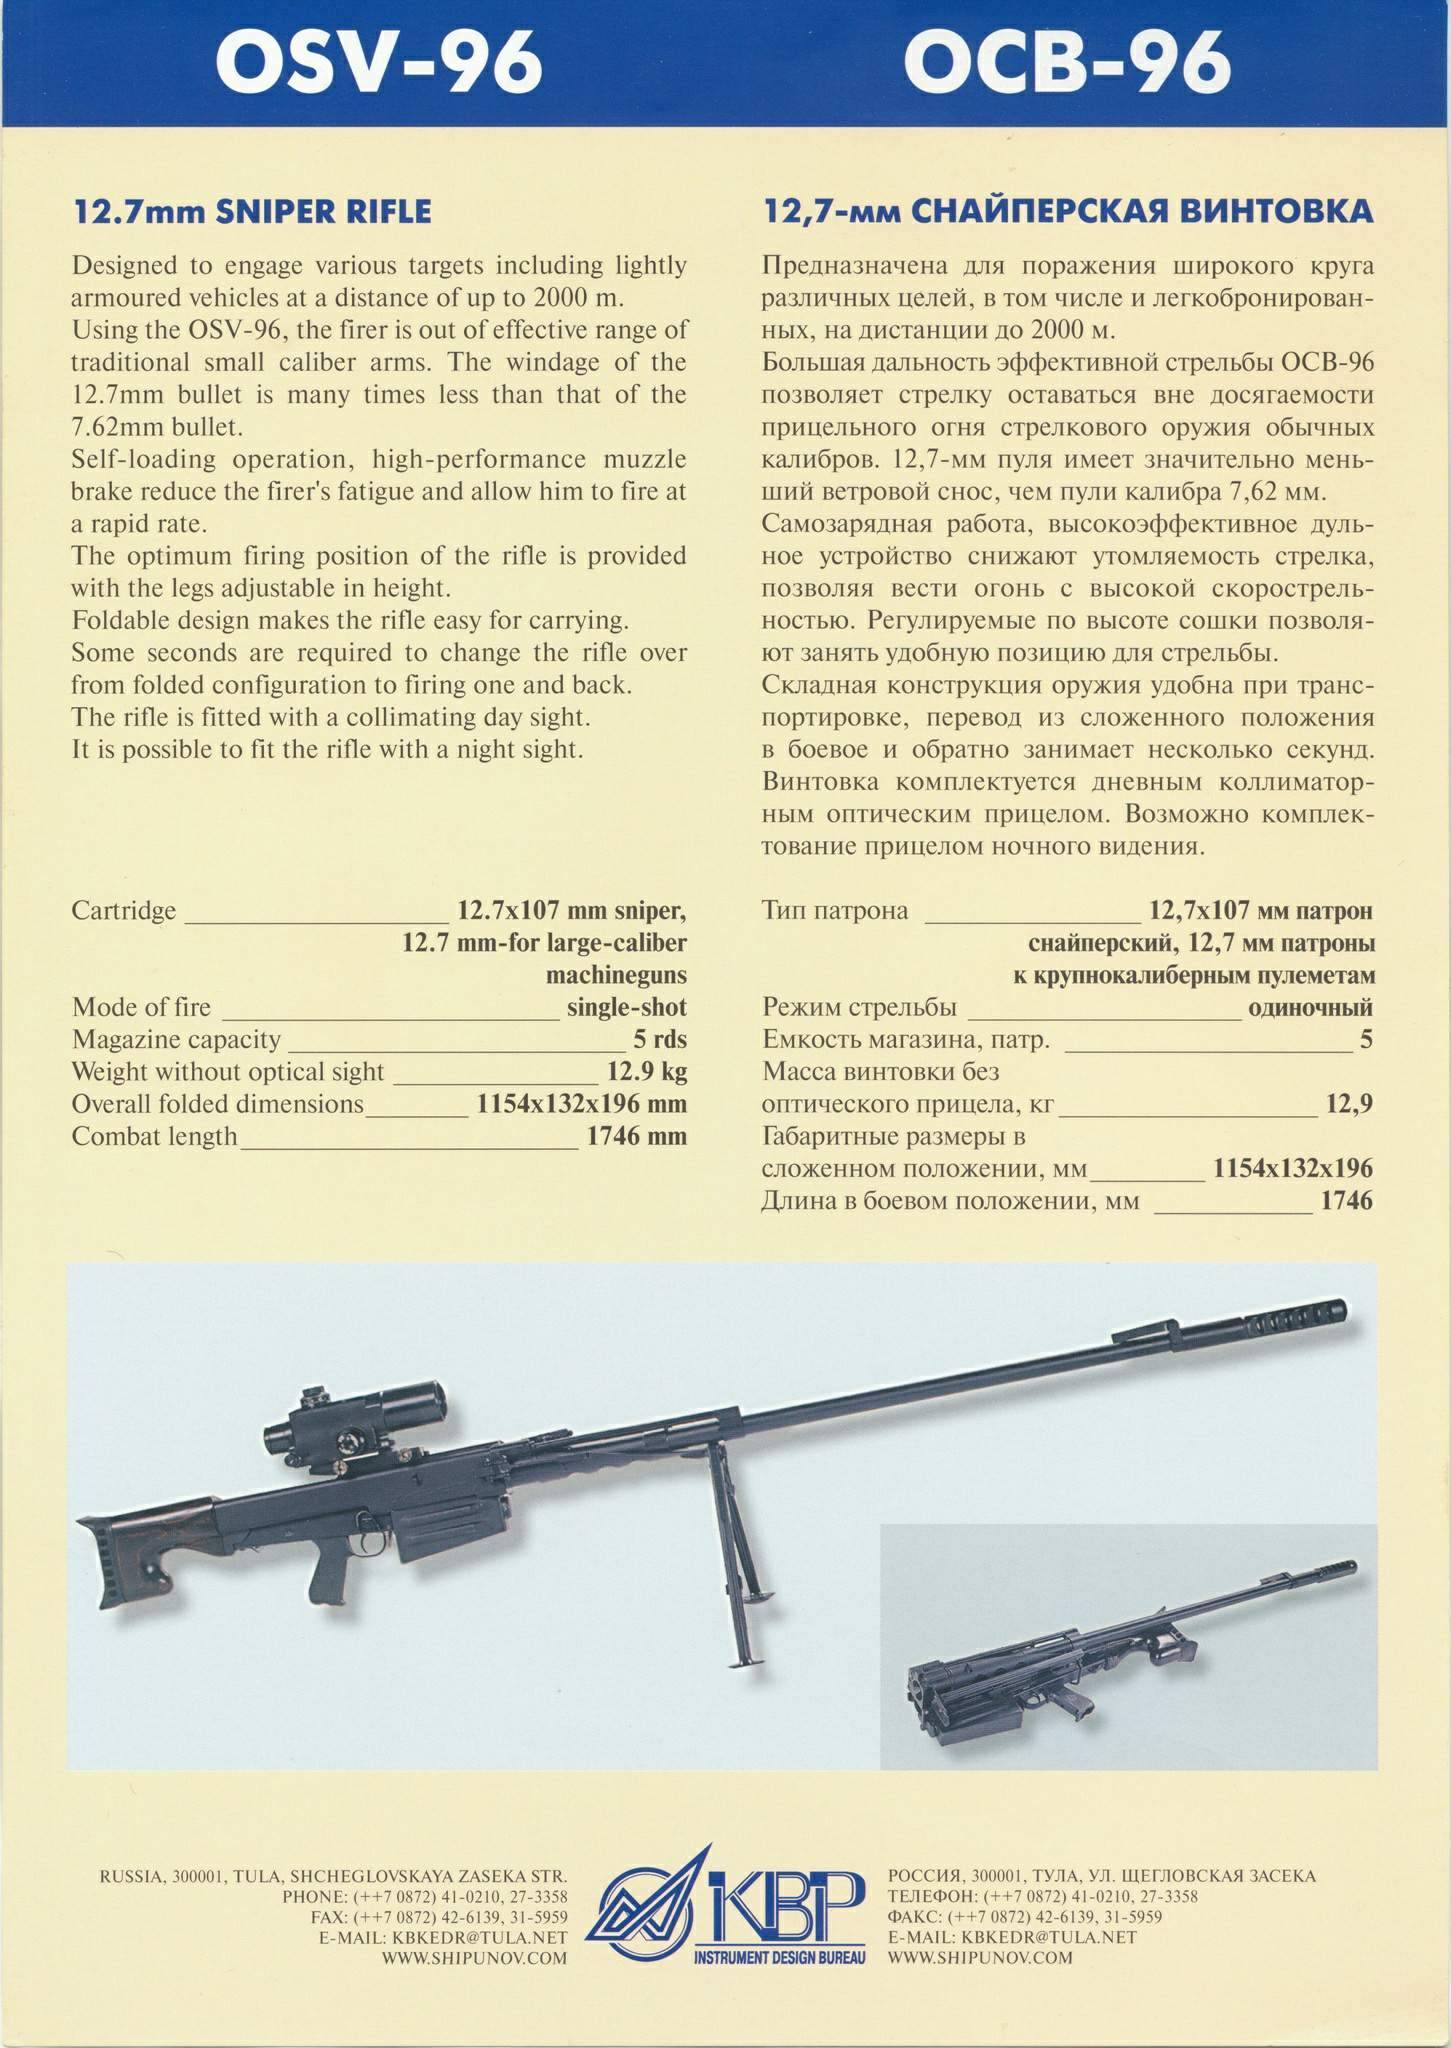 Обзор снайперской винтовки свдк